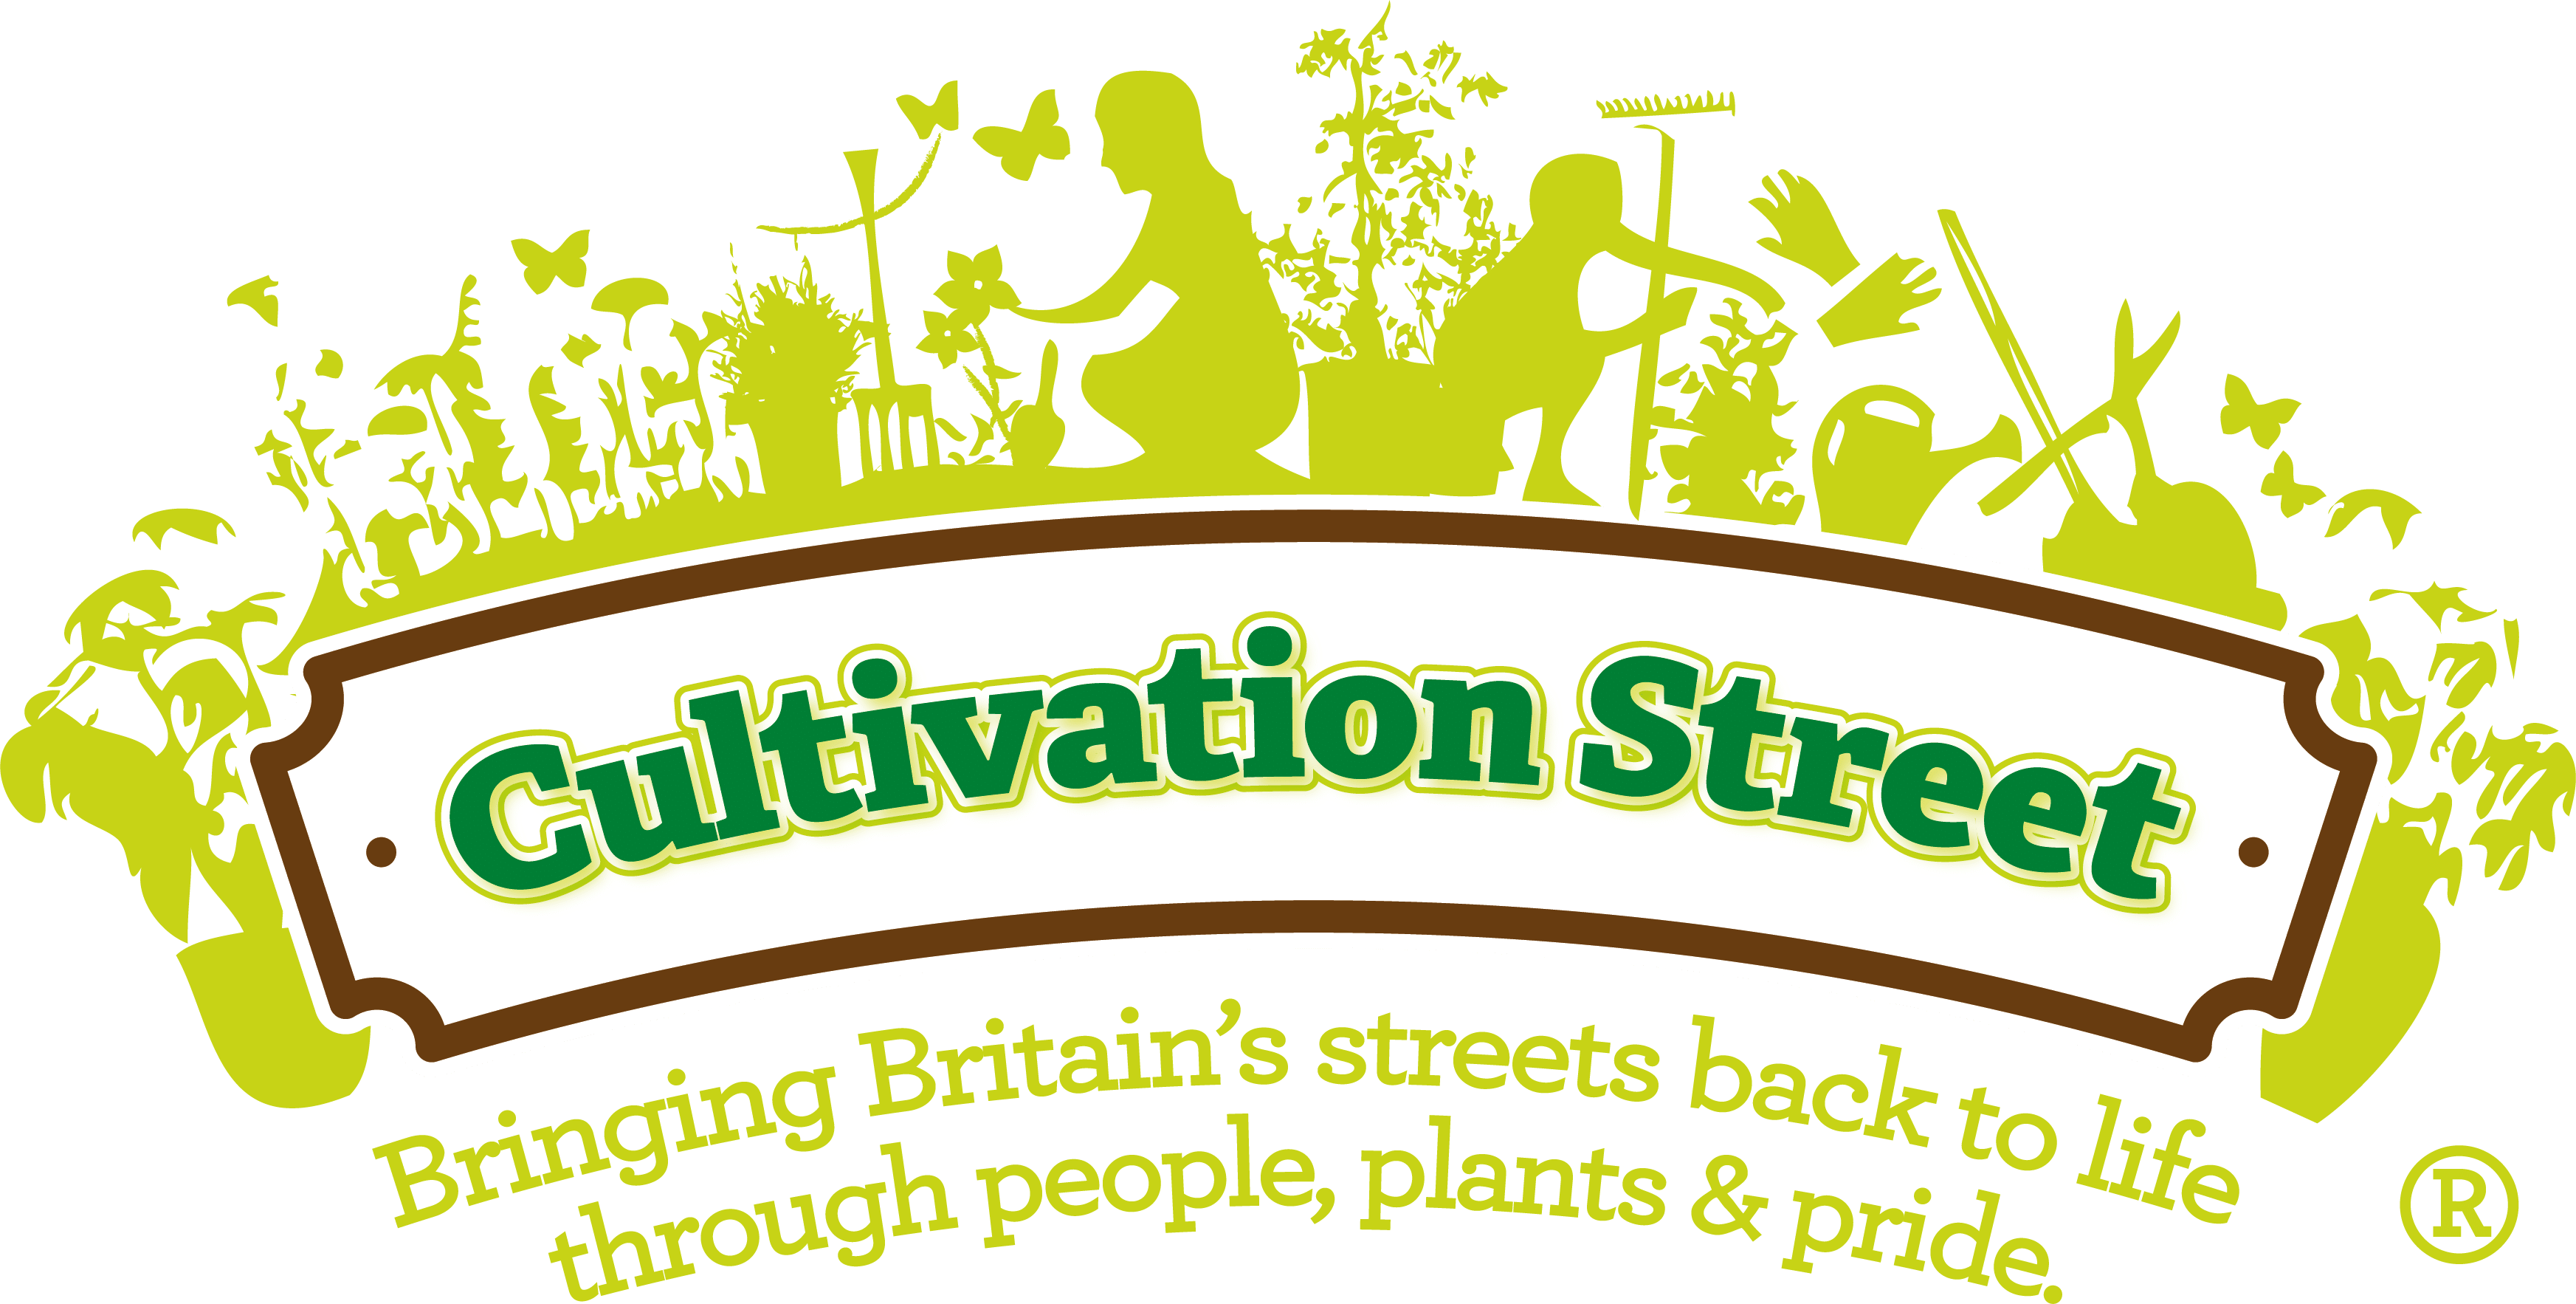 Cultivation Street Logo No Date Reg Trademark - Dormers Wells High School (3490x1766)